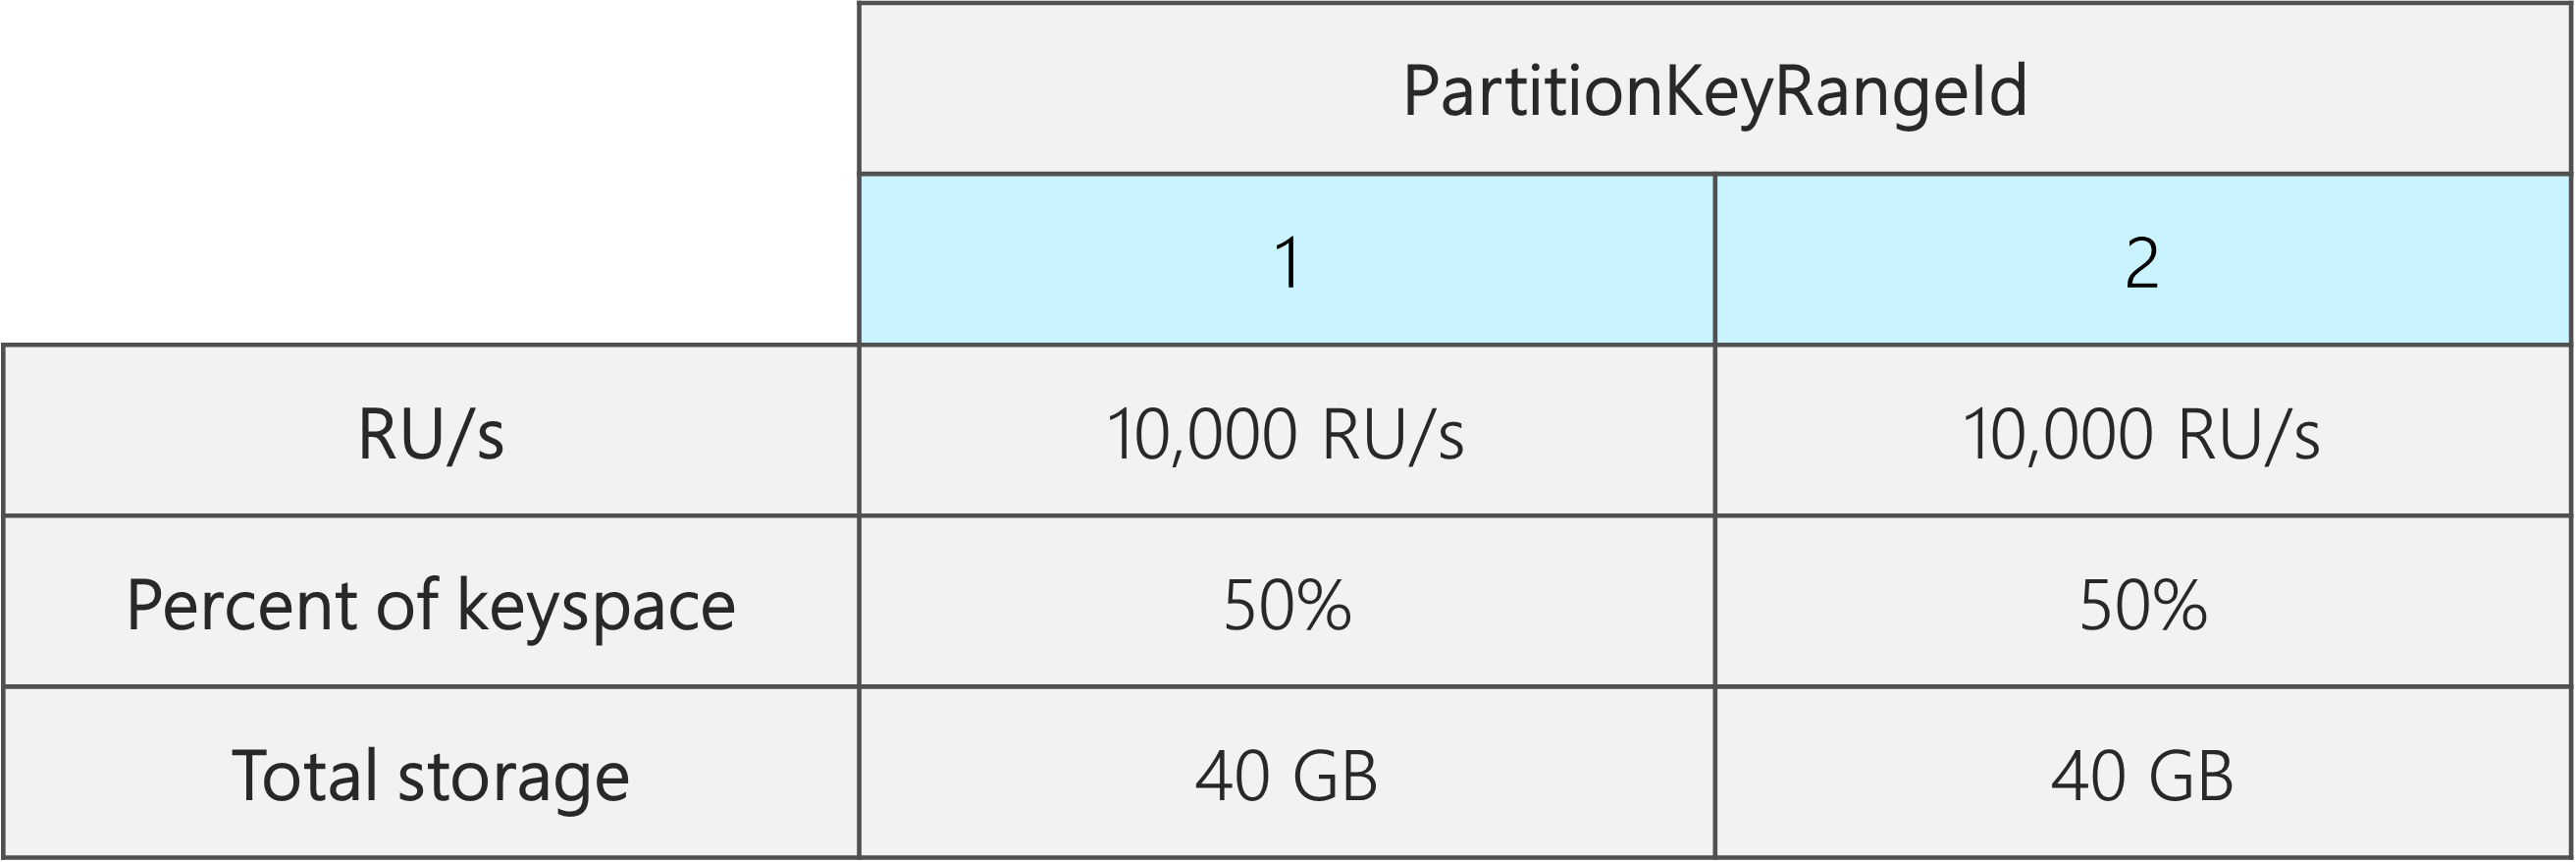 Dois PartitionKeyRangeIds, cada um com 10.000 RU/s, 40 GB e 50% do espaço total de chaves